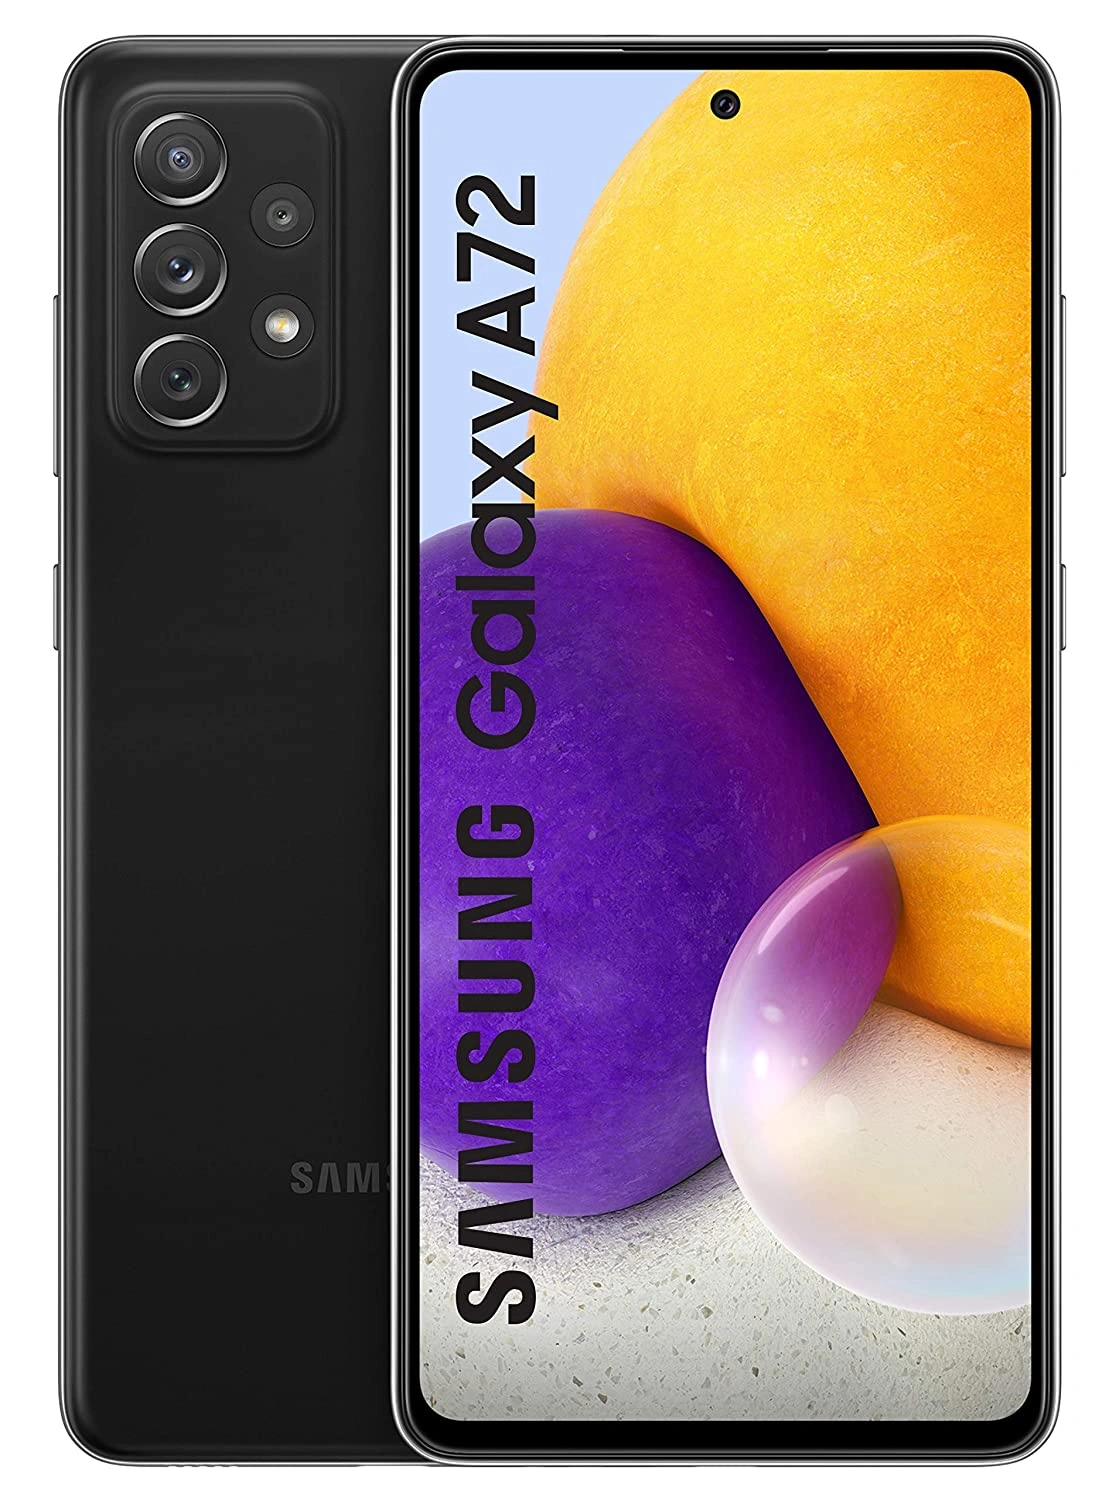 Samsung Galaxy A72 (Black, 8GB RAM, 128GB Storage)-A72